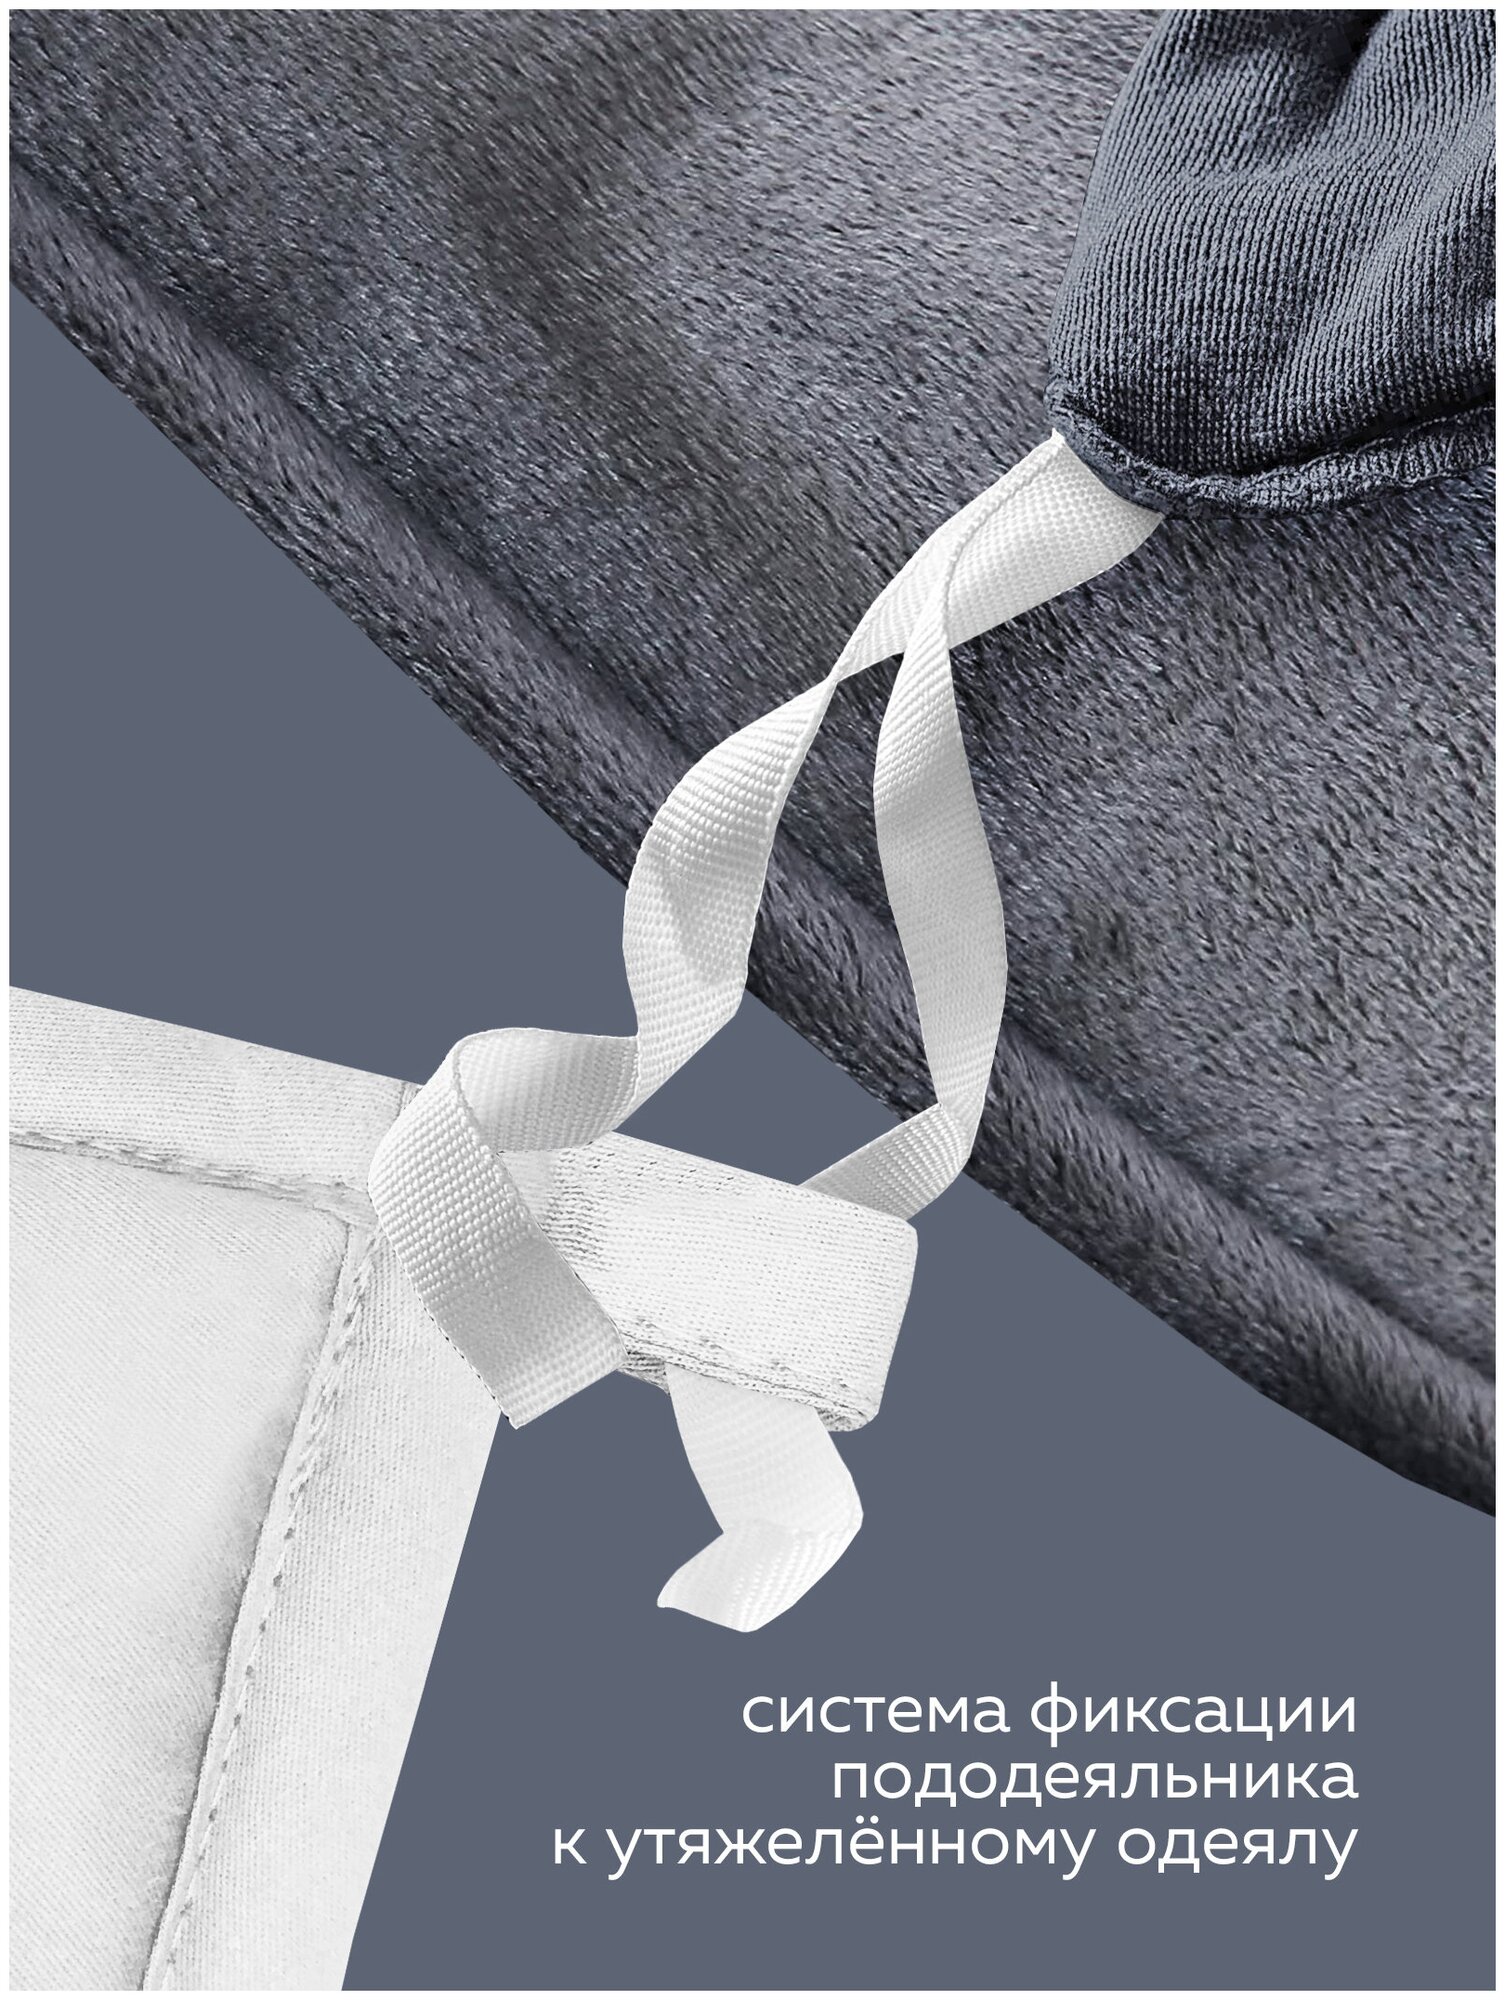 Утяжеленное одеяло Gravity (Гравити) Wellina, 140x205 см. белое 8 кг./ Сенсорное одеяло Gravity 140 x 205 см. / Тяжелое одеяло 8 кг. - фотография № 17